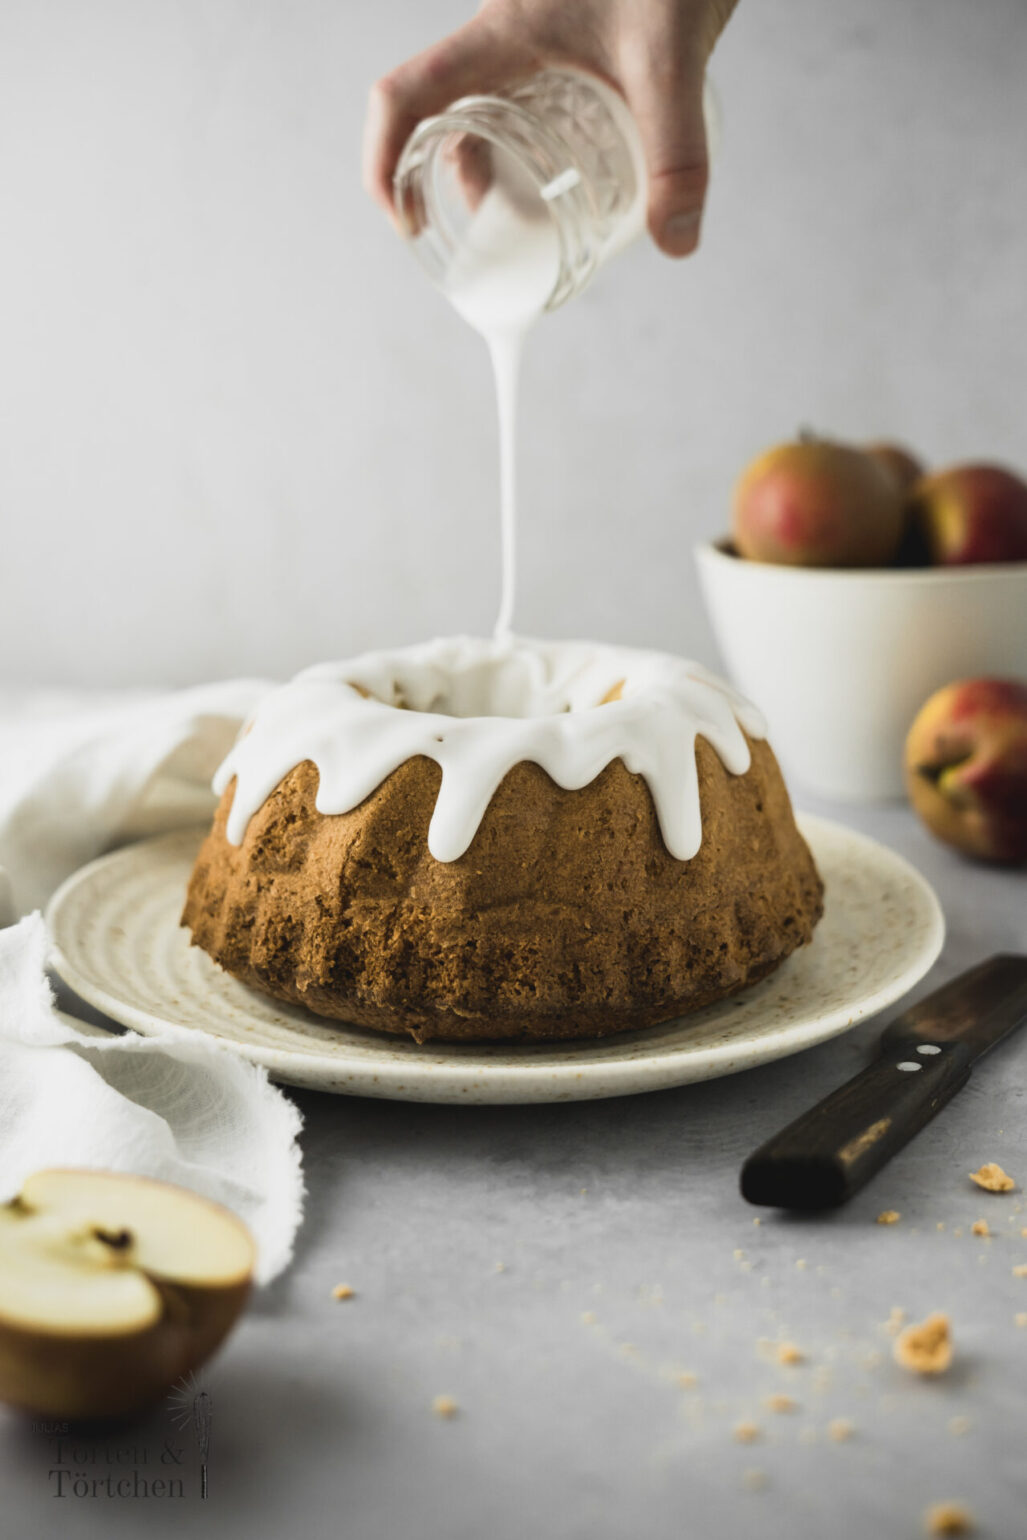 Einfaches Rezept für saftigen Apfel Gugelhupf mit Amarettini und schnellem Guss. Perfekter Kuchen fürs Büro, da er mit den Äpfeln lange saftig bleibt und nicht gekühlt werden muss! #Gugelhupf #Apfelkuchen #Rührkuchen #KuchenfürsBüro #Obstkuchen #Rezept #Backen